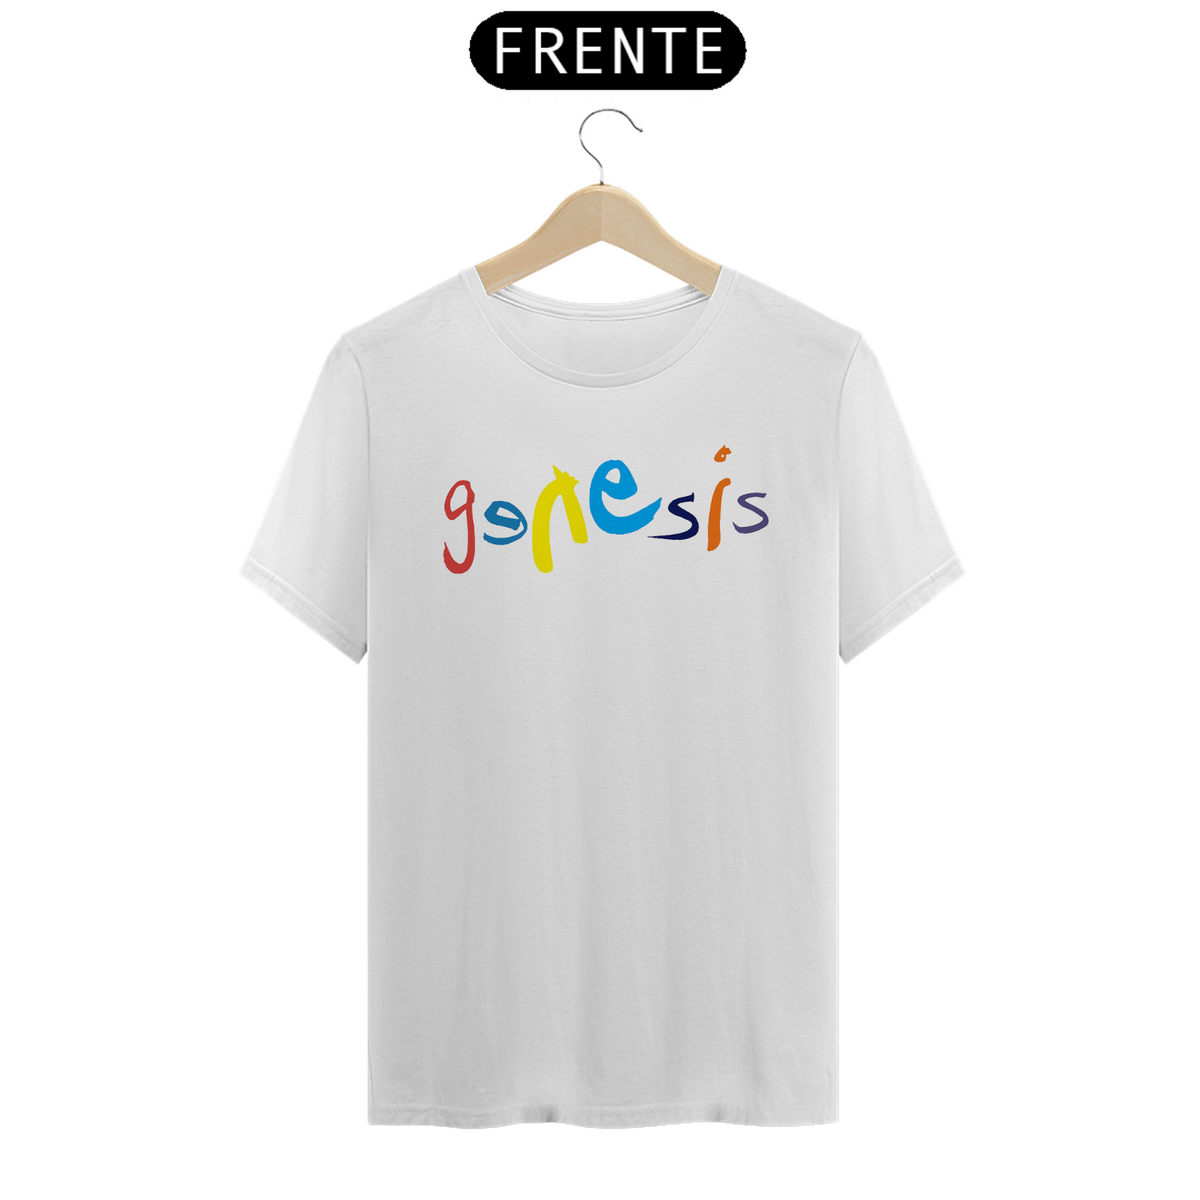 Nome do produto: Genesis